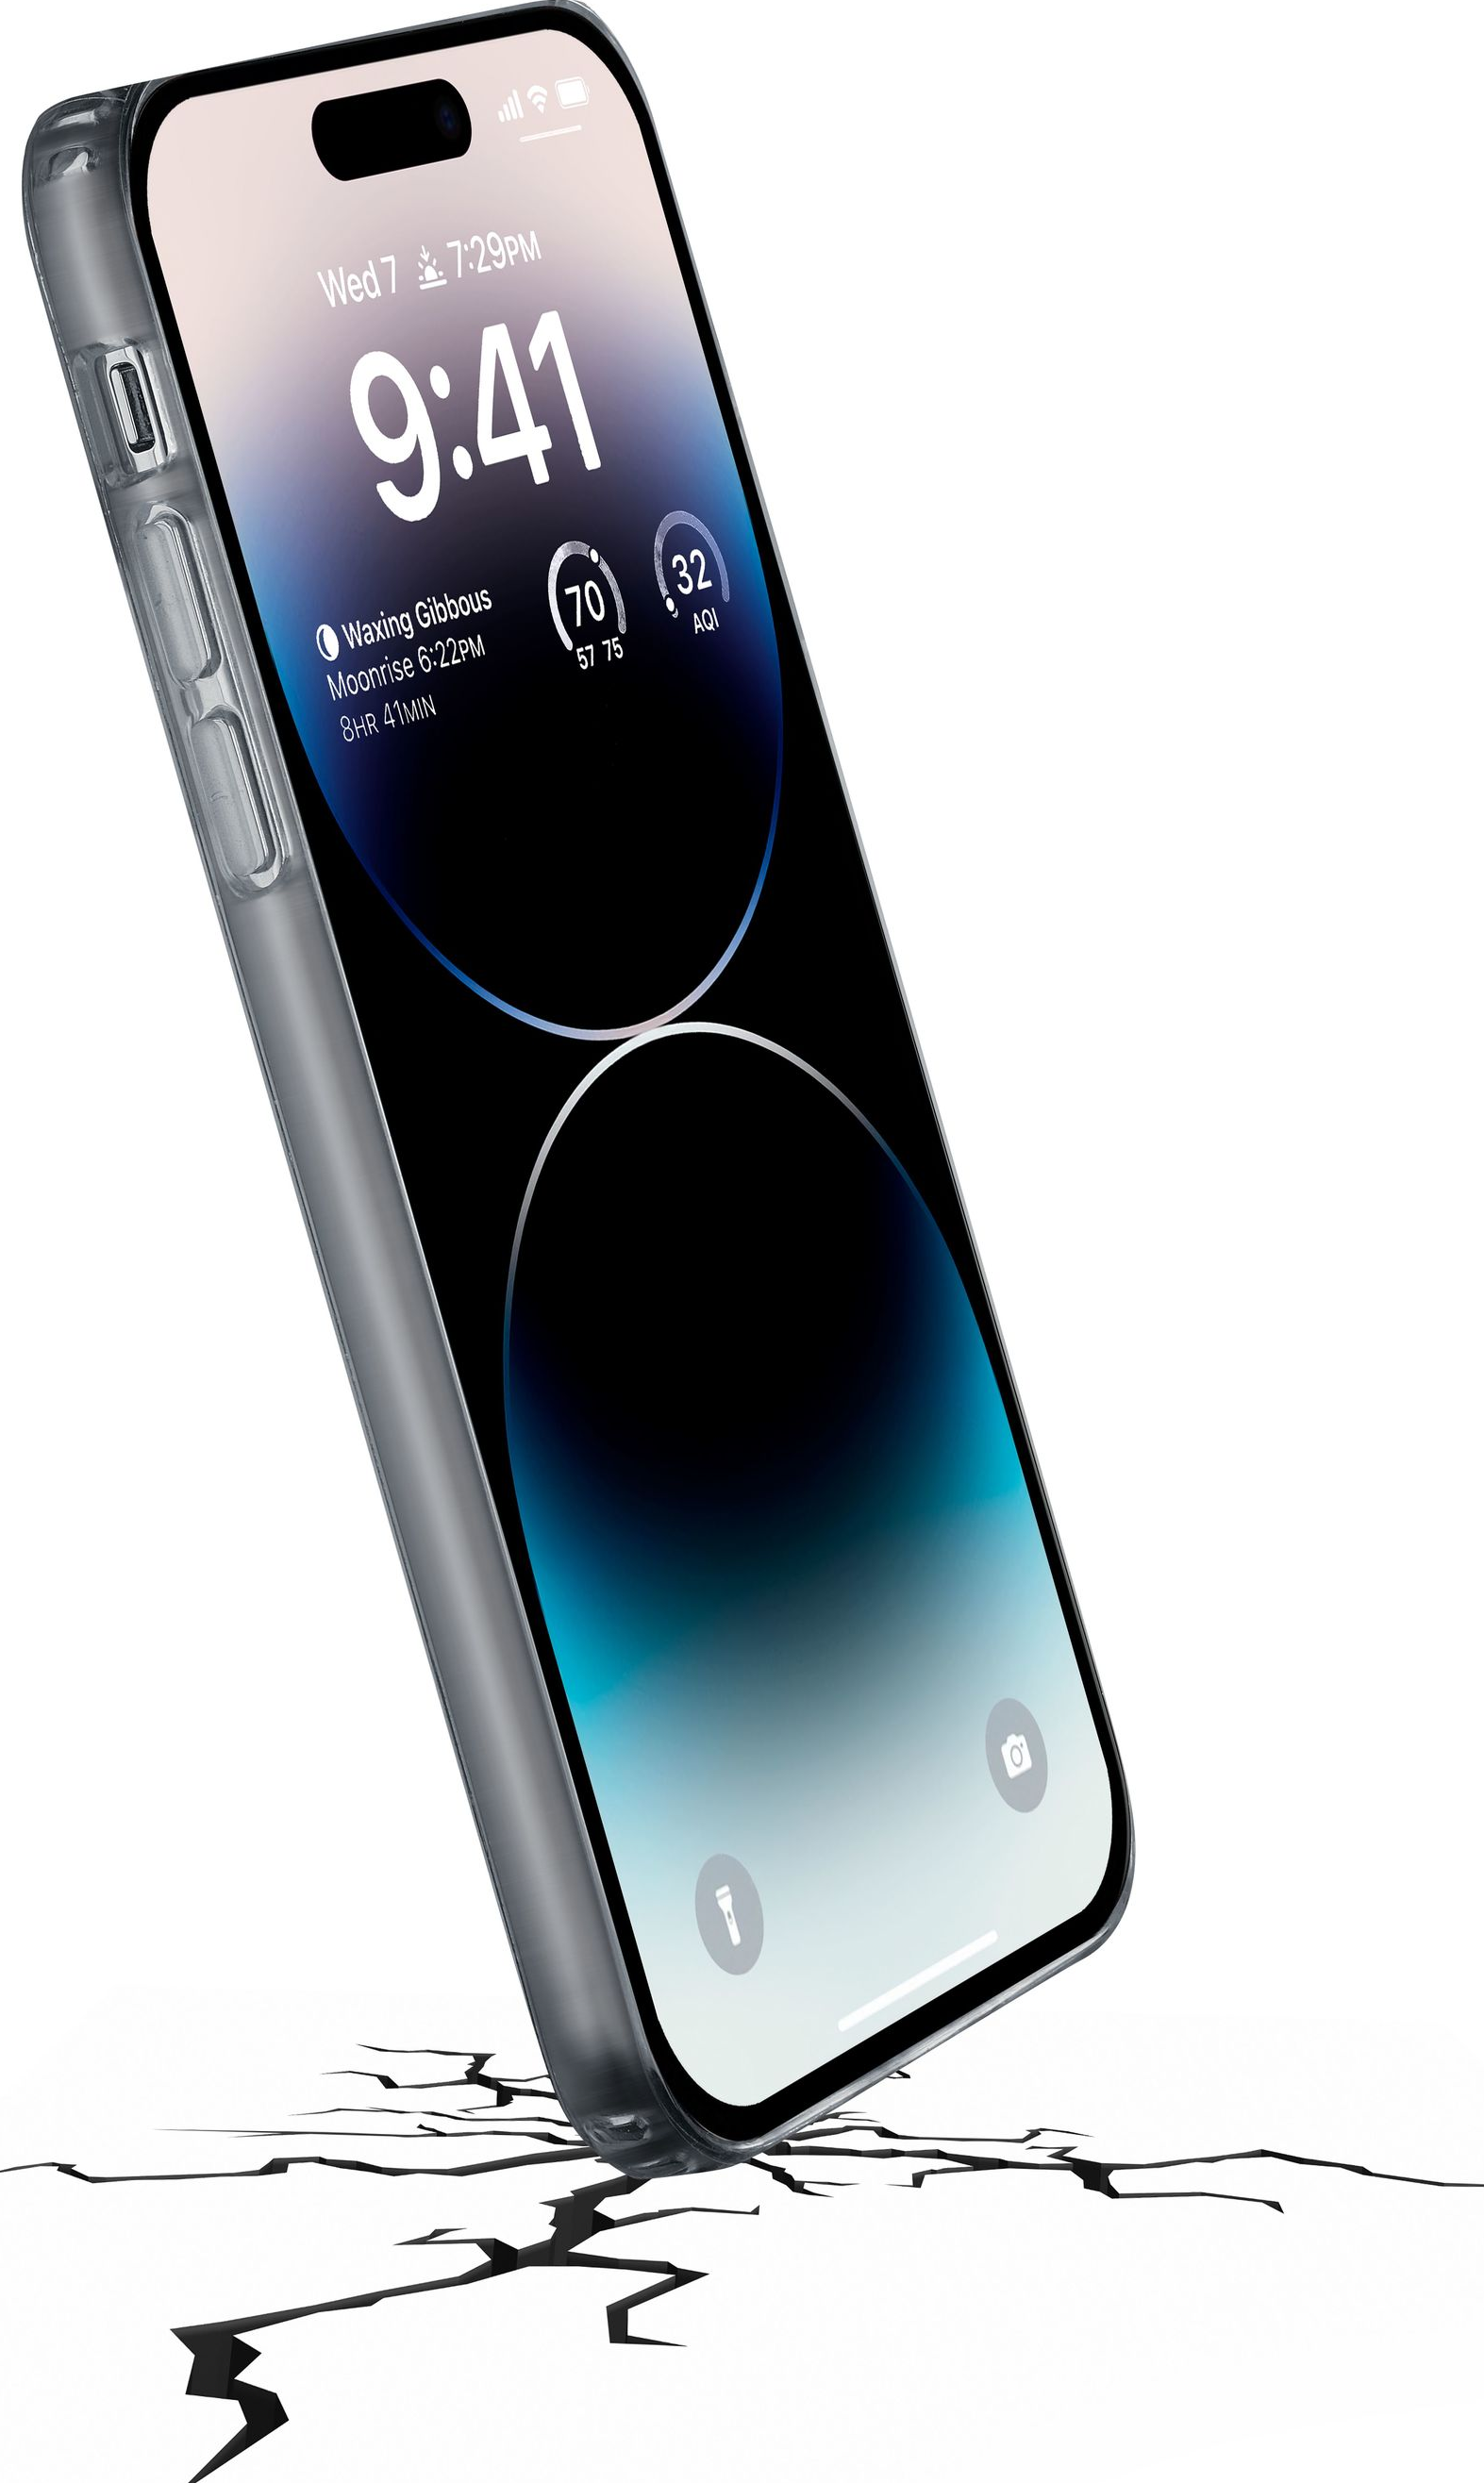 CELLULAR LINE Clear Strong - Guscio di protezione (Adatto per modello: Apple iPhone 14 Pro Max)